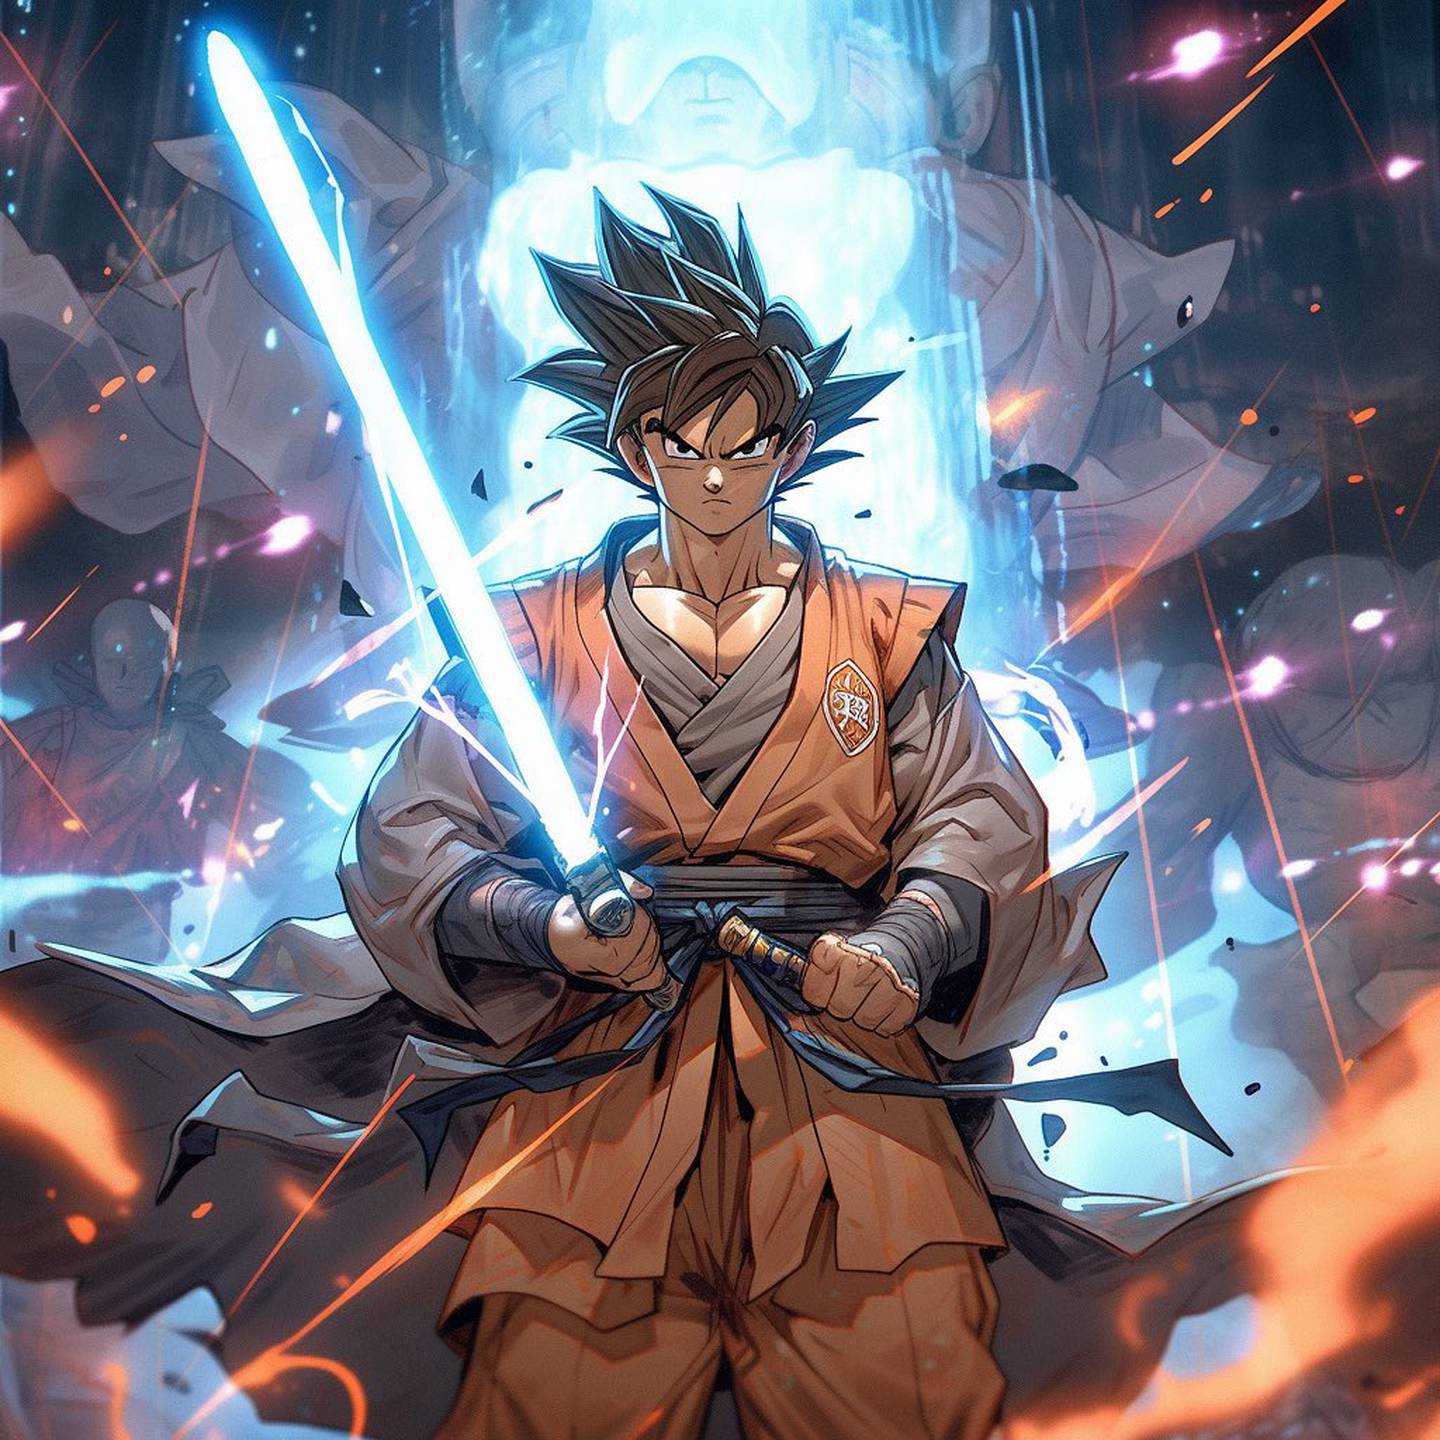 Goku as Jedi Knight.  @SenpaiCrusade